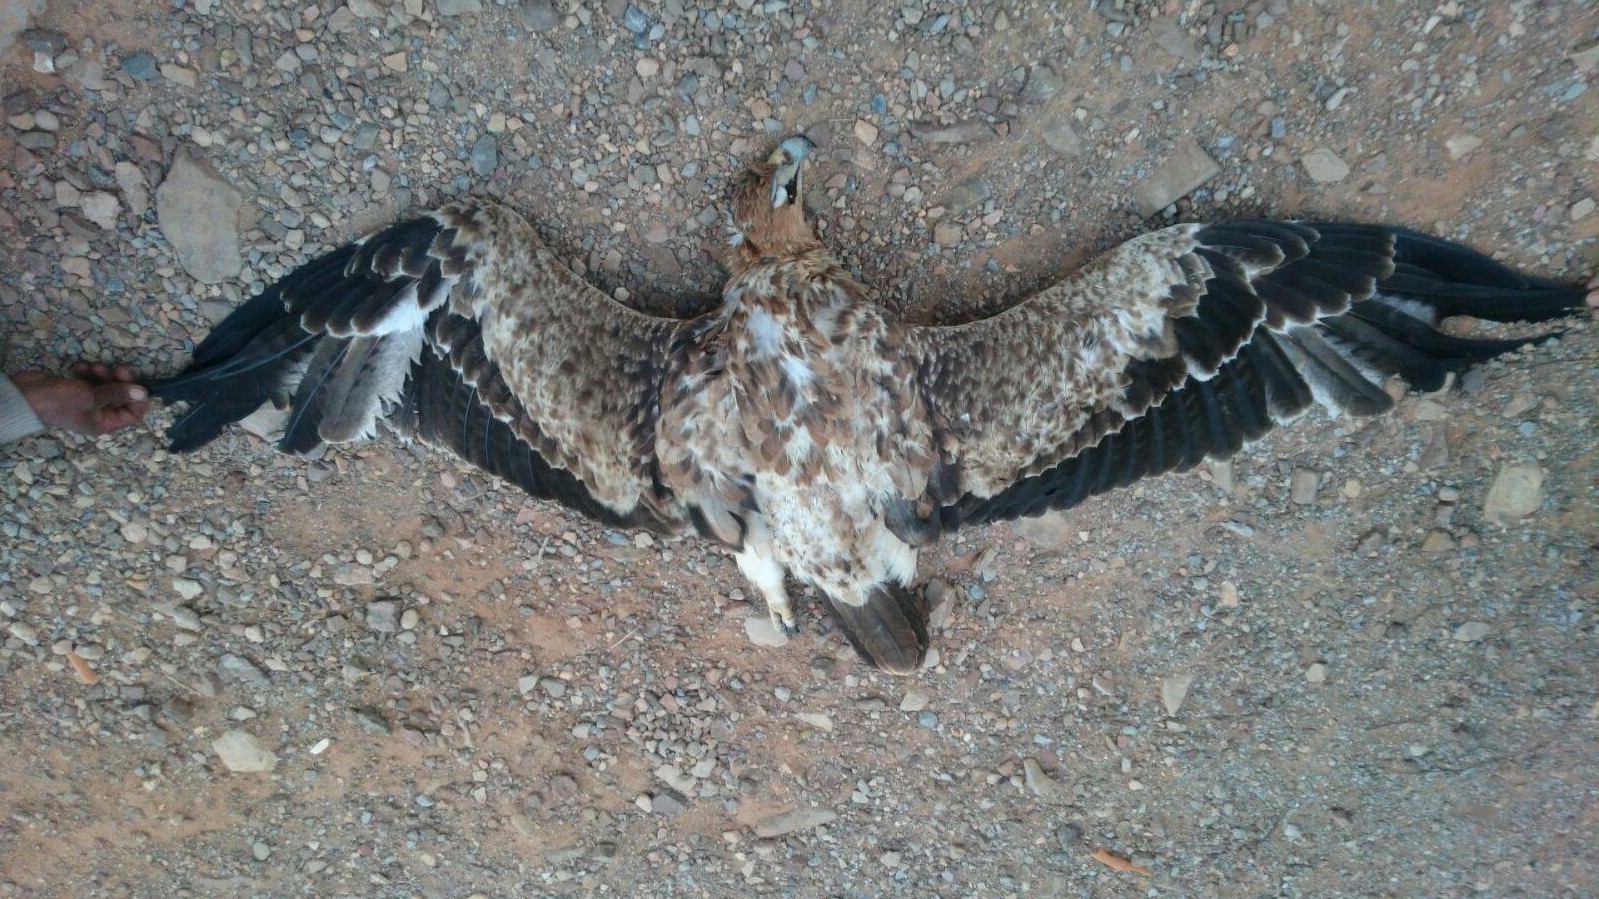 Aigle ibérique (Aquila adalberti) de trois ans, retrouvé électrocuté dans la zone de Guelmim le 5 mars 2016 par Houssien Kharraz.